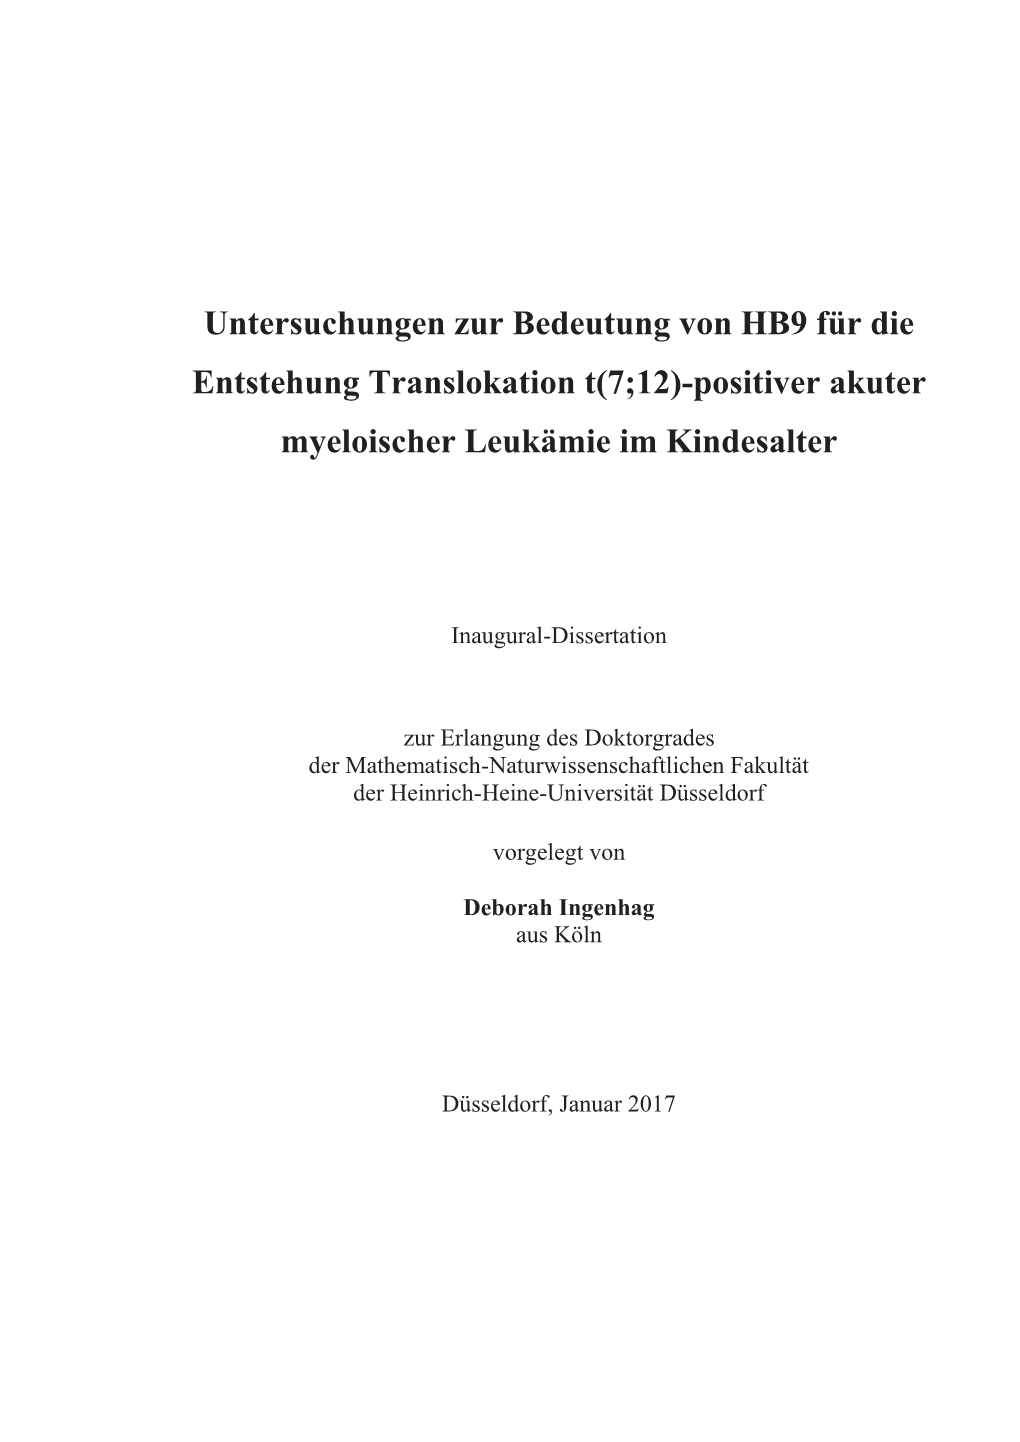 Untersuchungen Zur Bedeutung Von HB9 Für Die Entstehung Translokation T(7;12)-Positiver Akuter Myeloischer Leukämie Im Kindesa